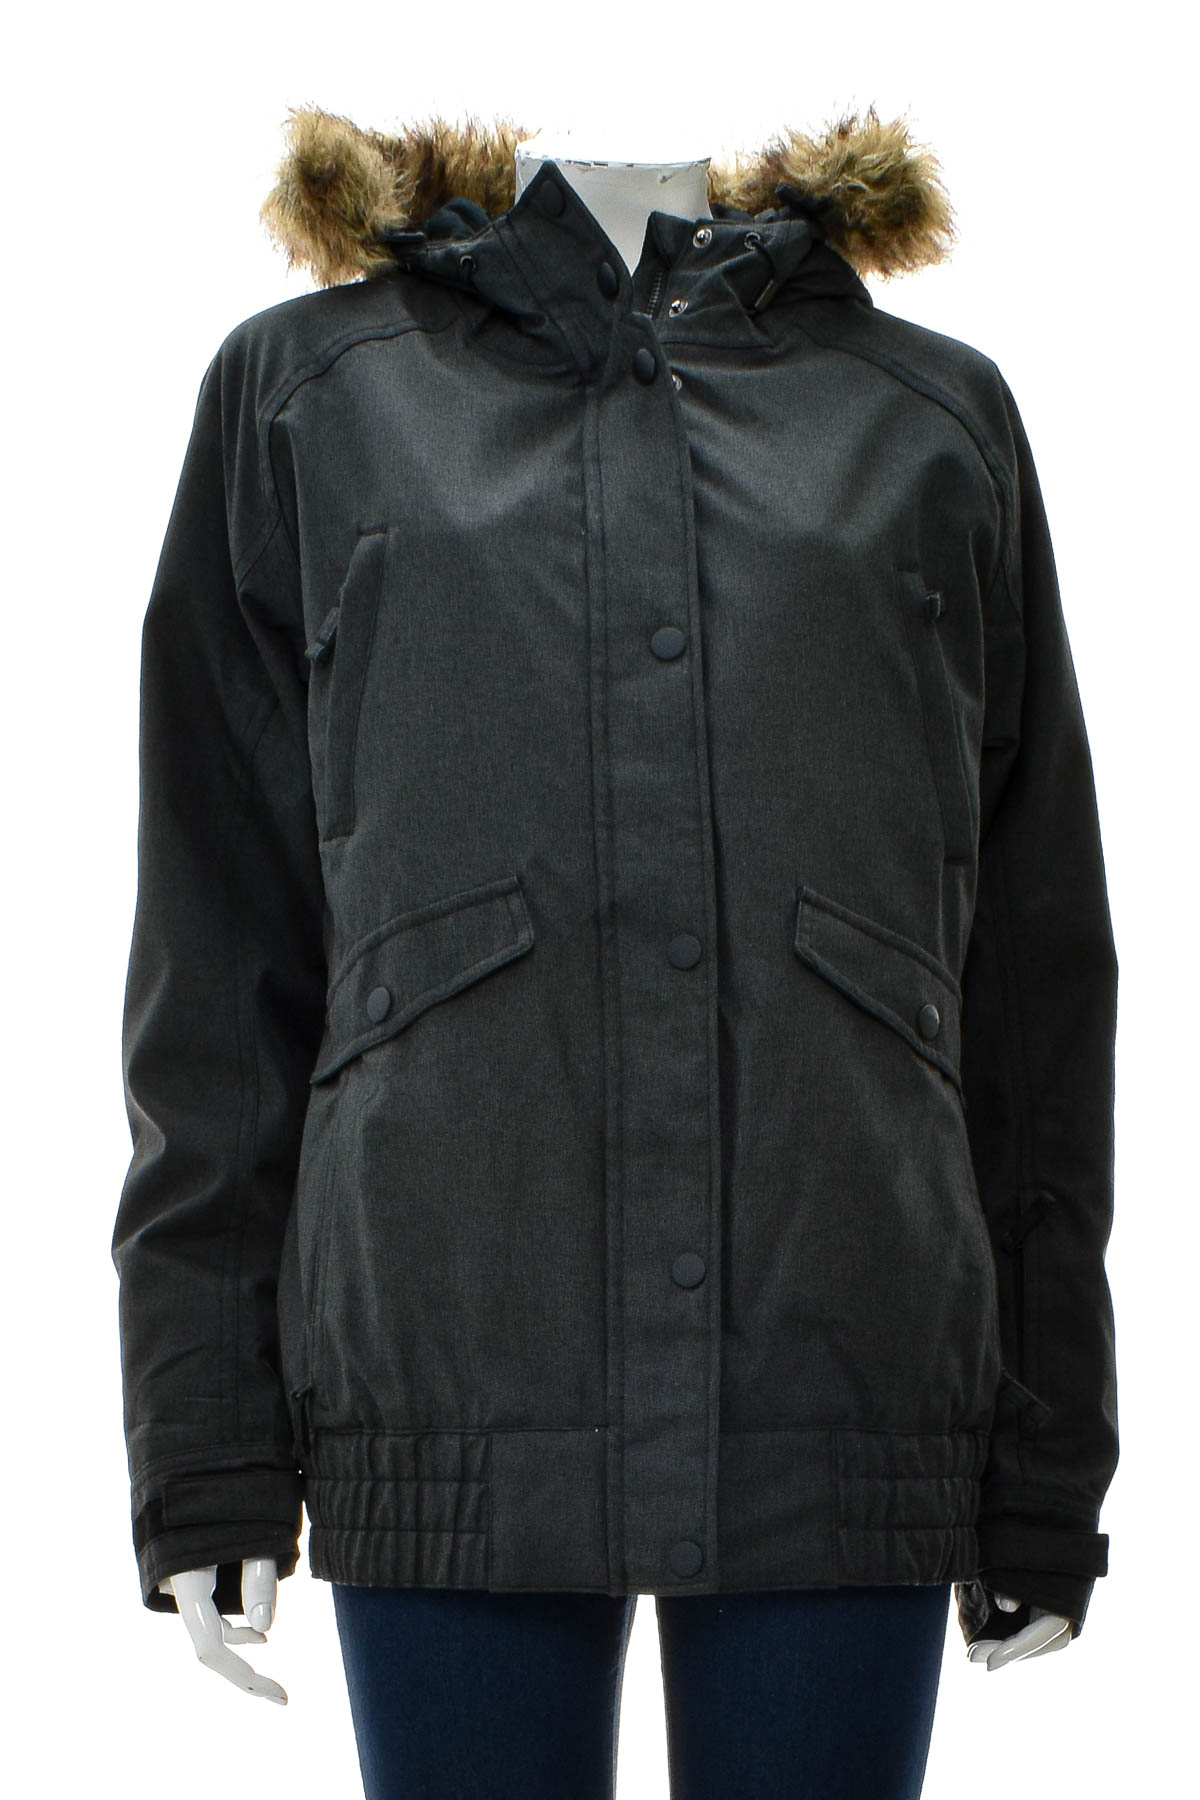 Female jacket - Ripzone - 0